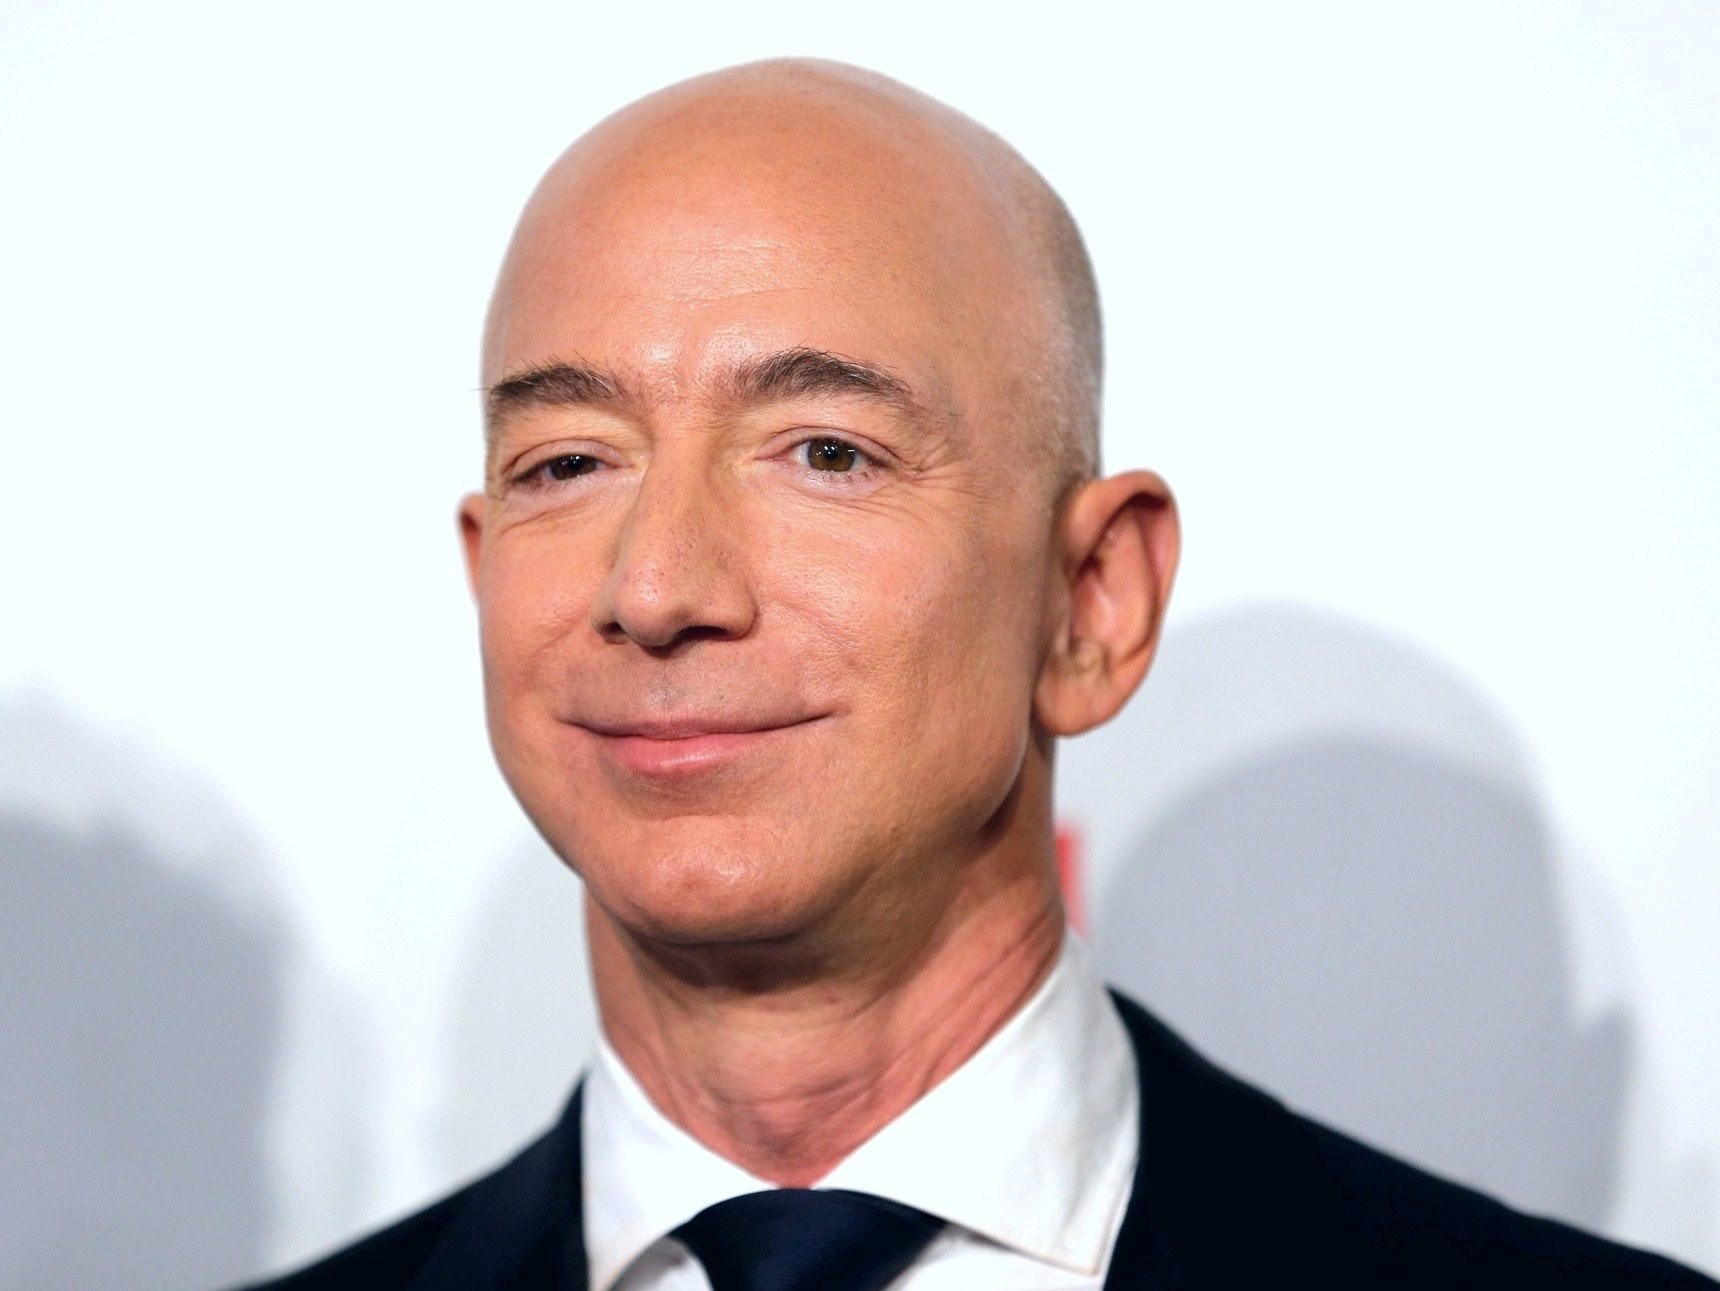 Rộ tin đồn Jeff Bezos sẽ trở lại làm CEO sau khi Amazon sa thải 18.000 nhân viên